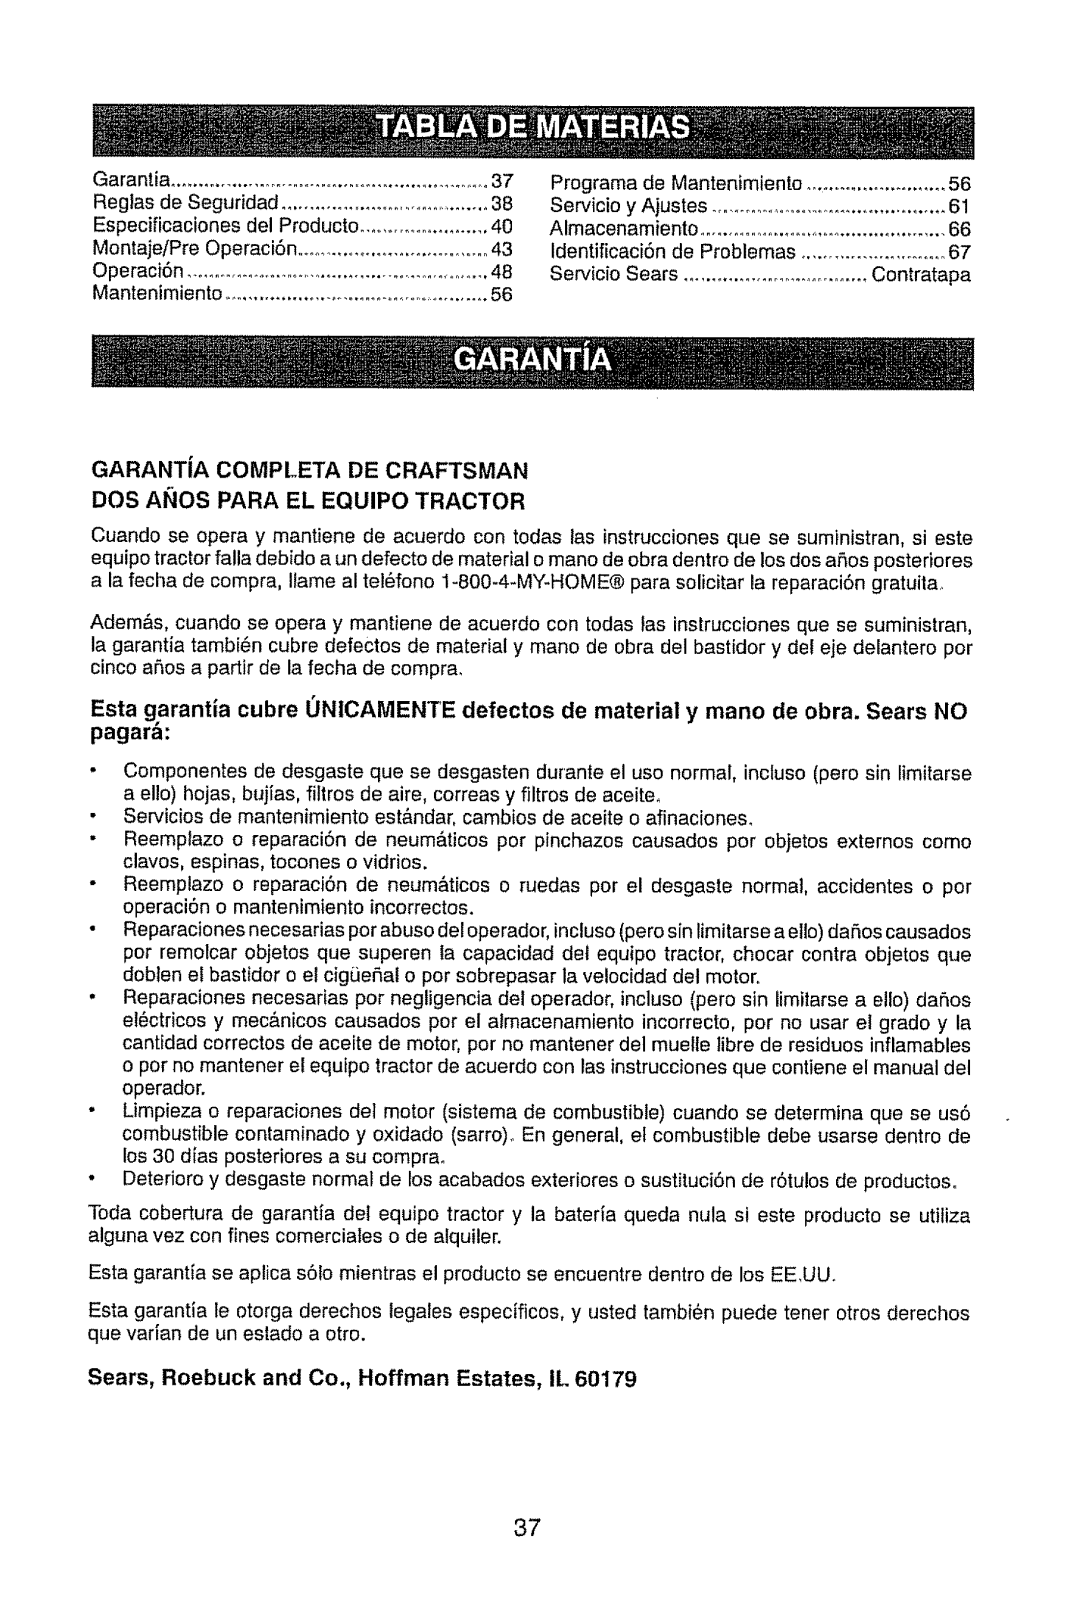 Craftsman 917.289470 manual GARANTiA COMPLETA DE CRAFTSMAN, Dos Anos Para El Equipo Tractor 